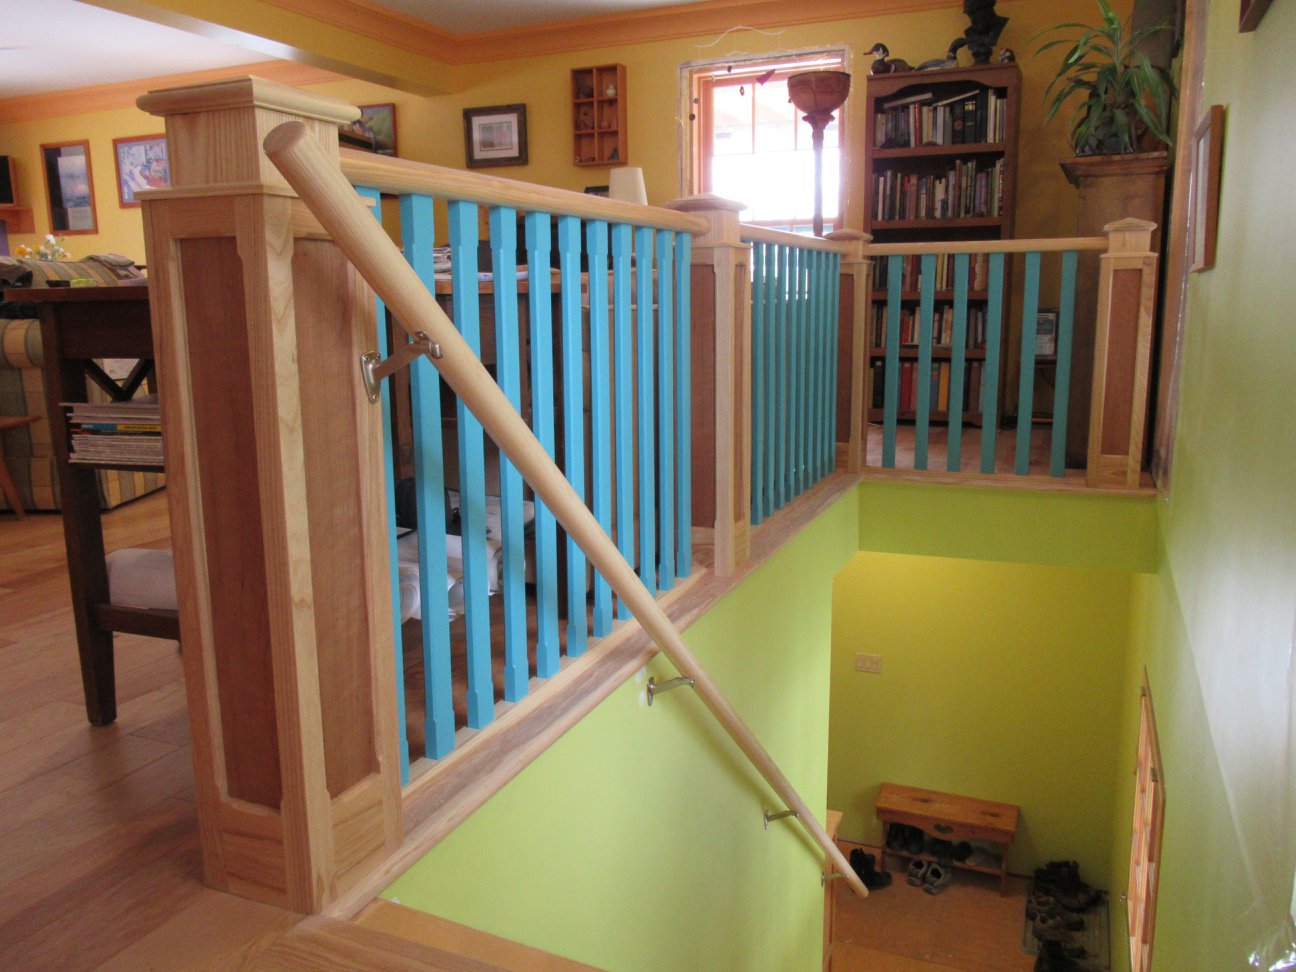 Stairs hand rail